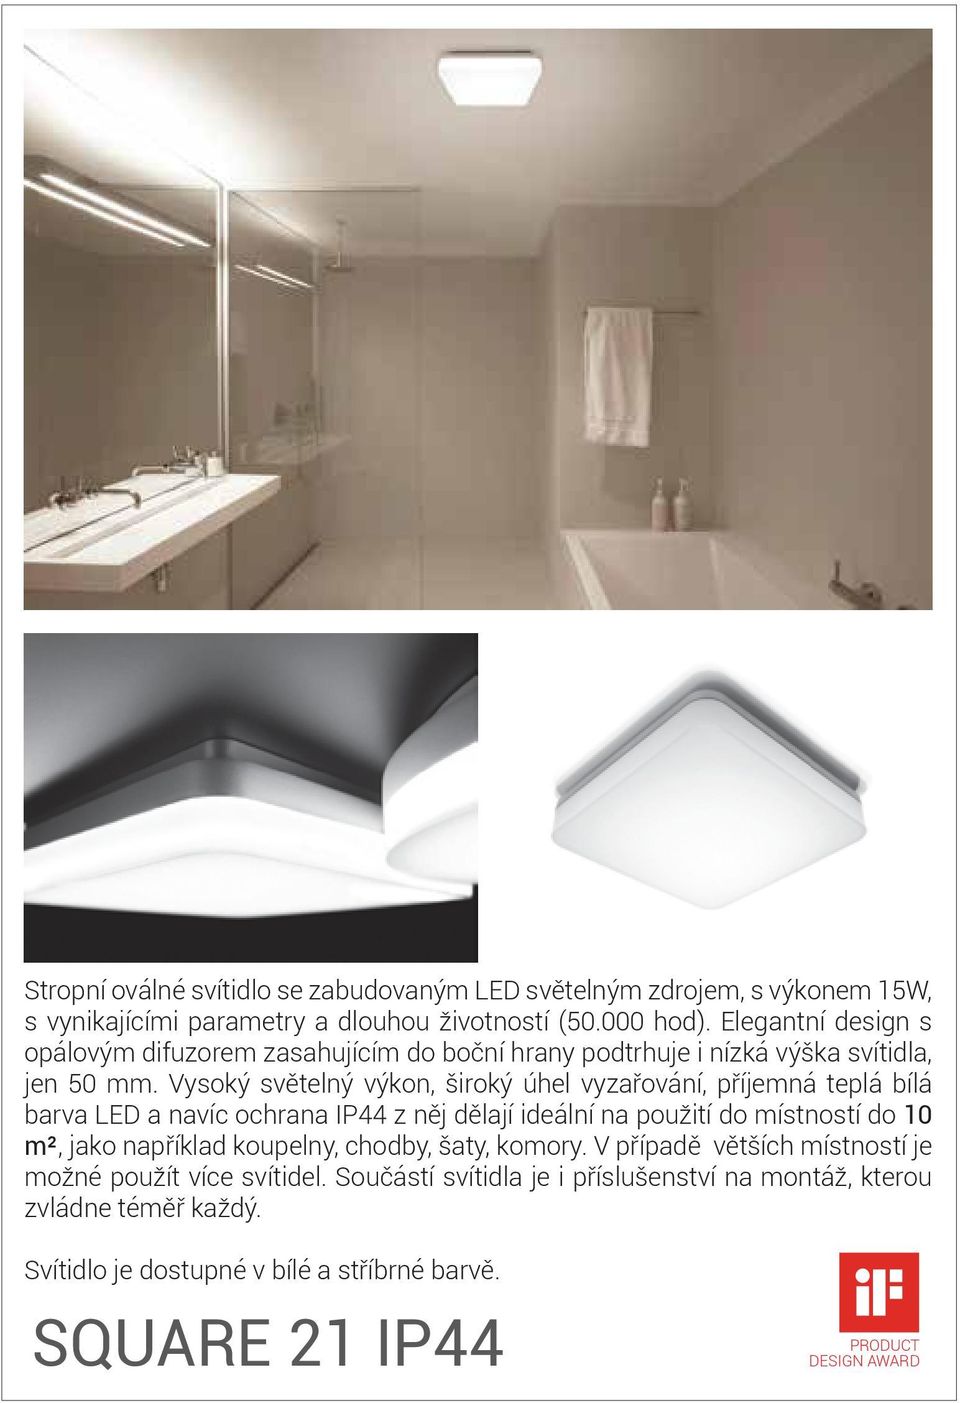 Vysoký světelný výkon, široký úhel vyzařování, příjemná teplá bílá barva LED a navíc ochrana IP44 z něj dělají ideální na použití do místností do 10 m², jako